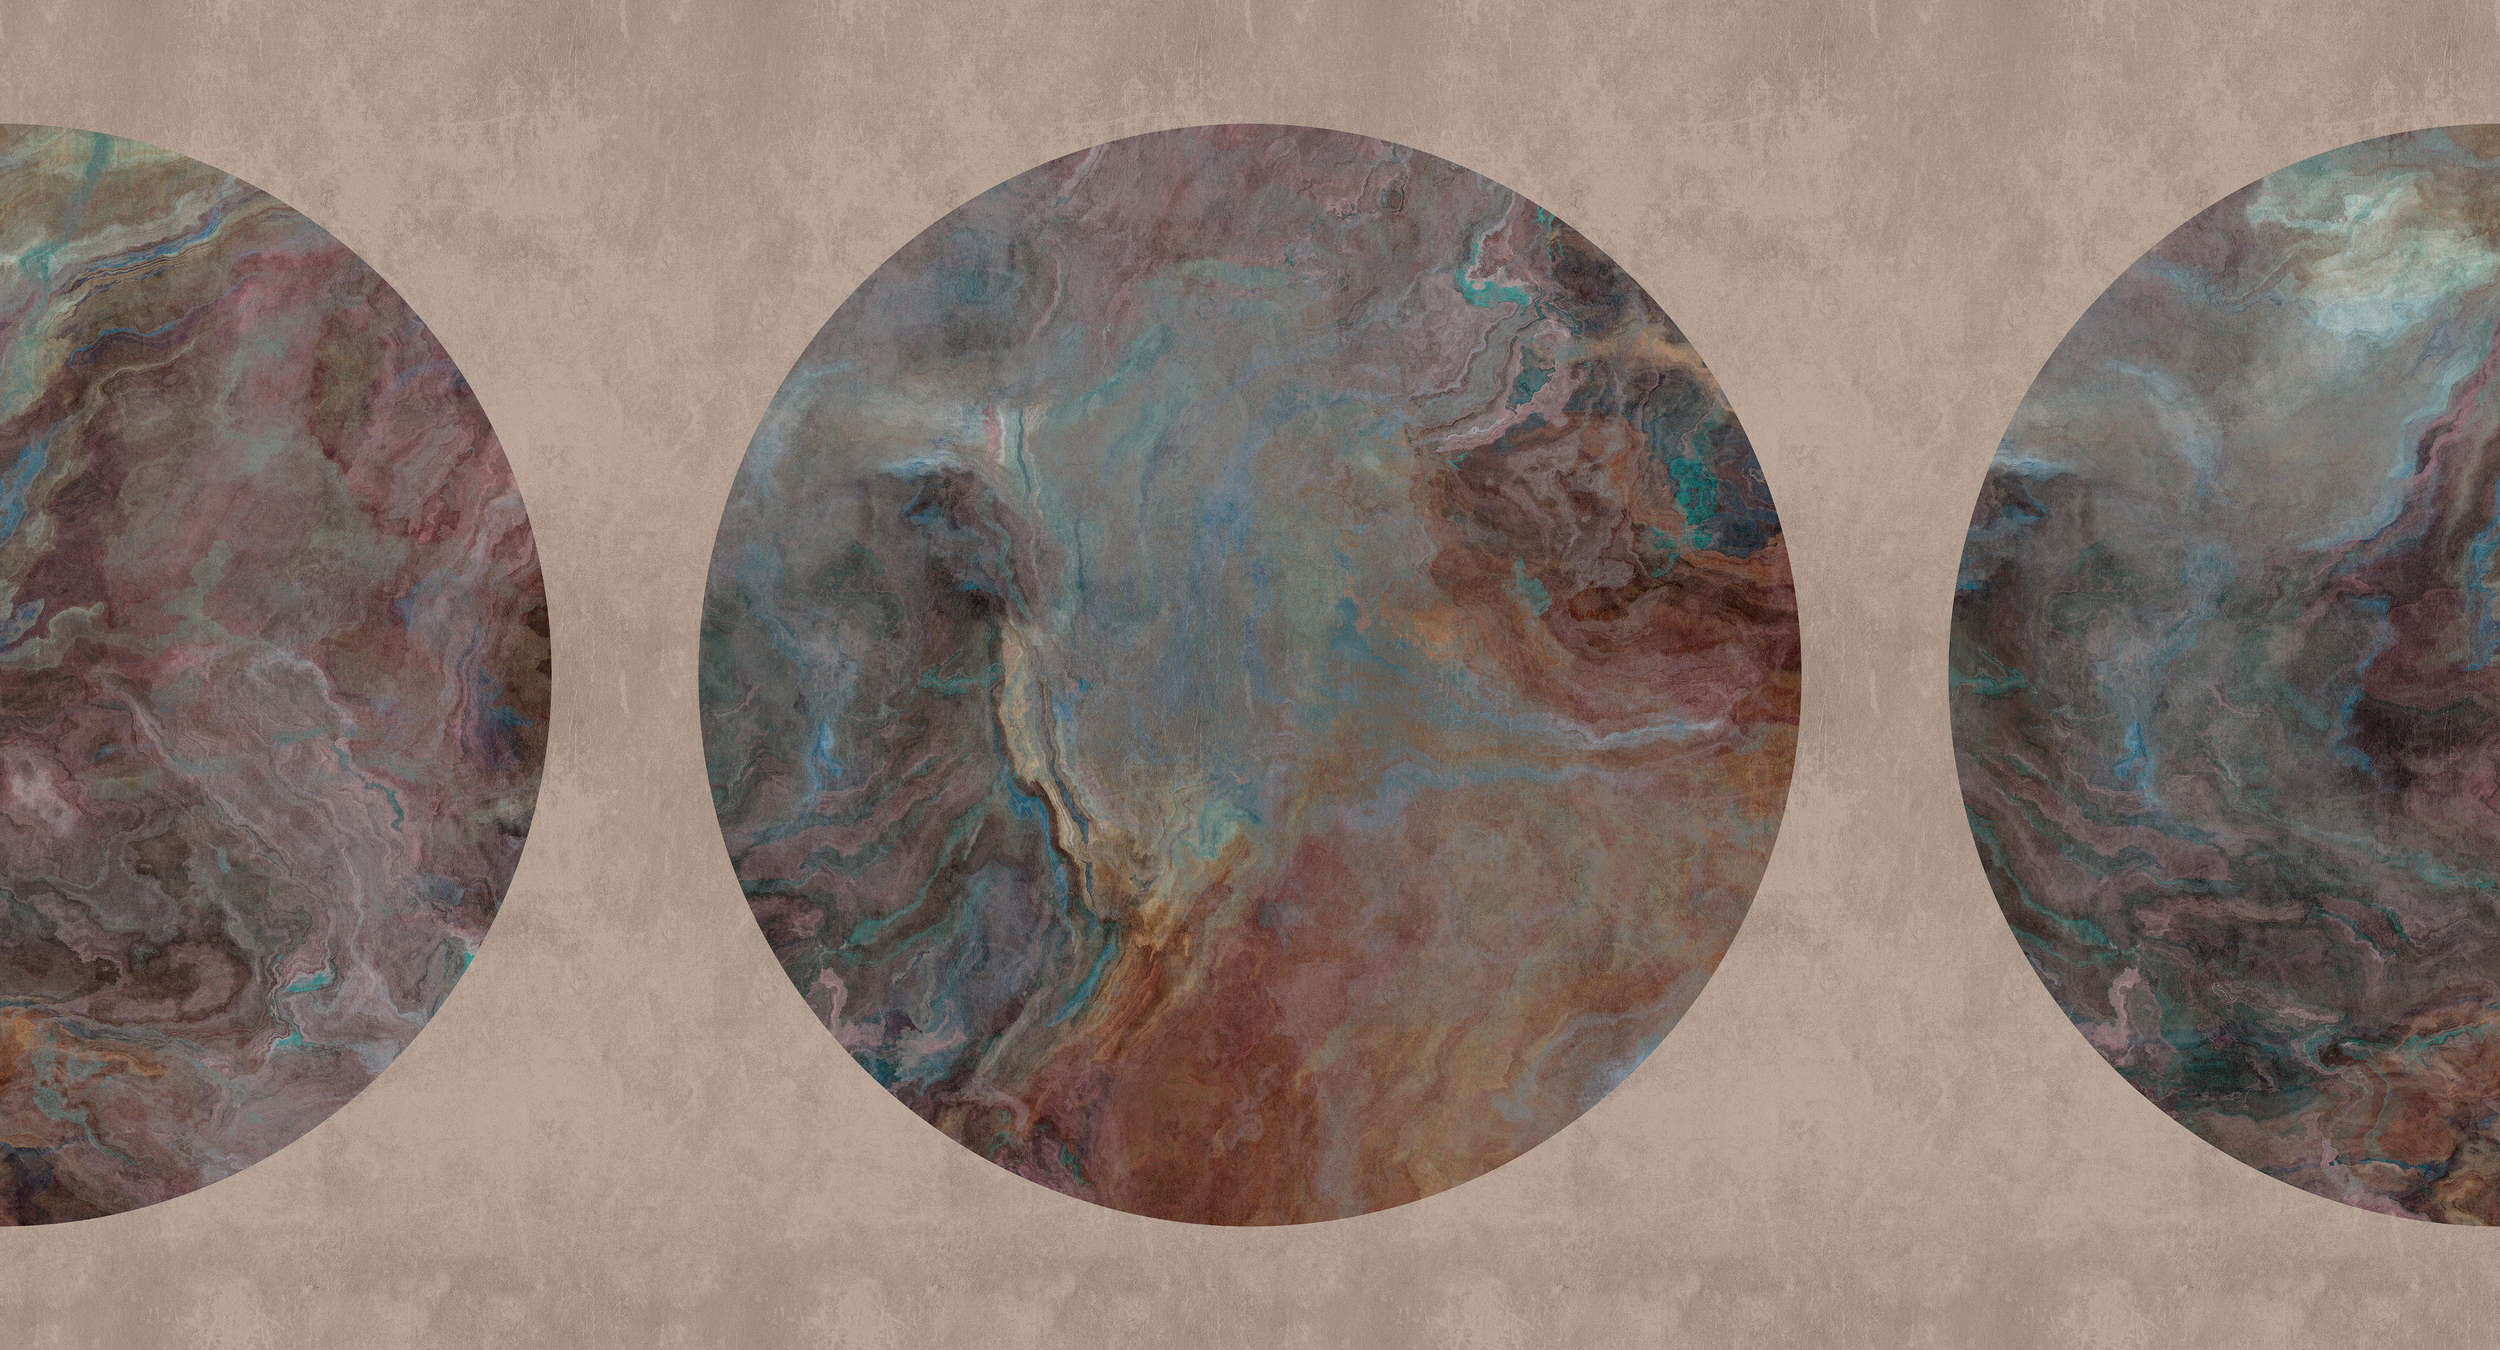             Jupiter 1 - Muurschildering gemarmerde steencirkel motief
        